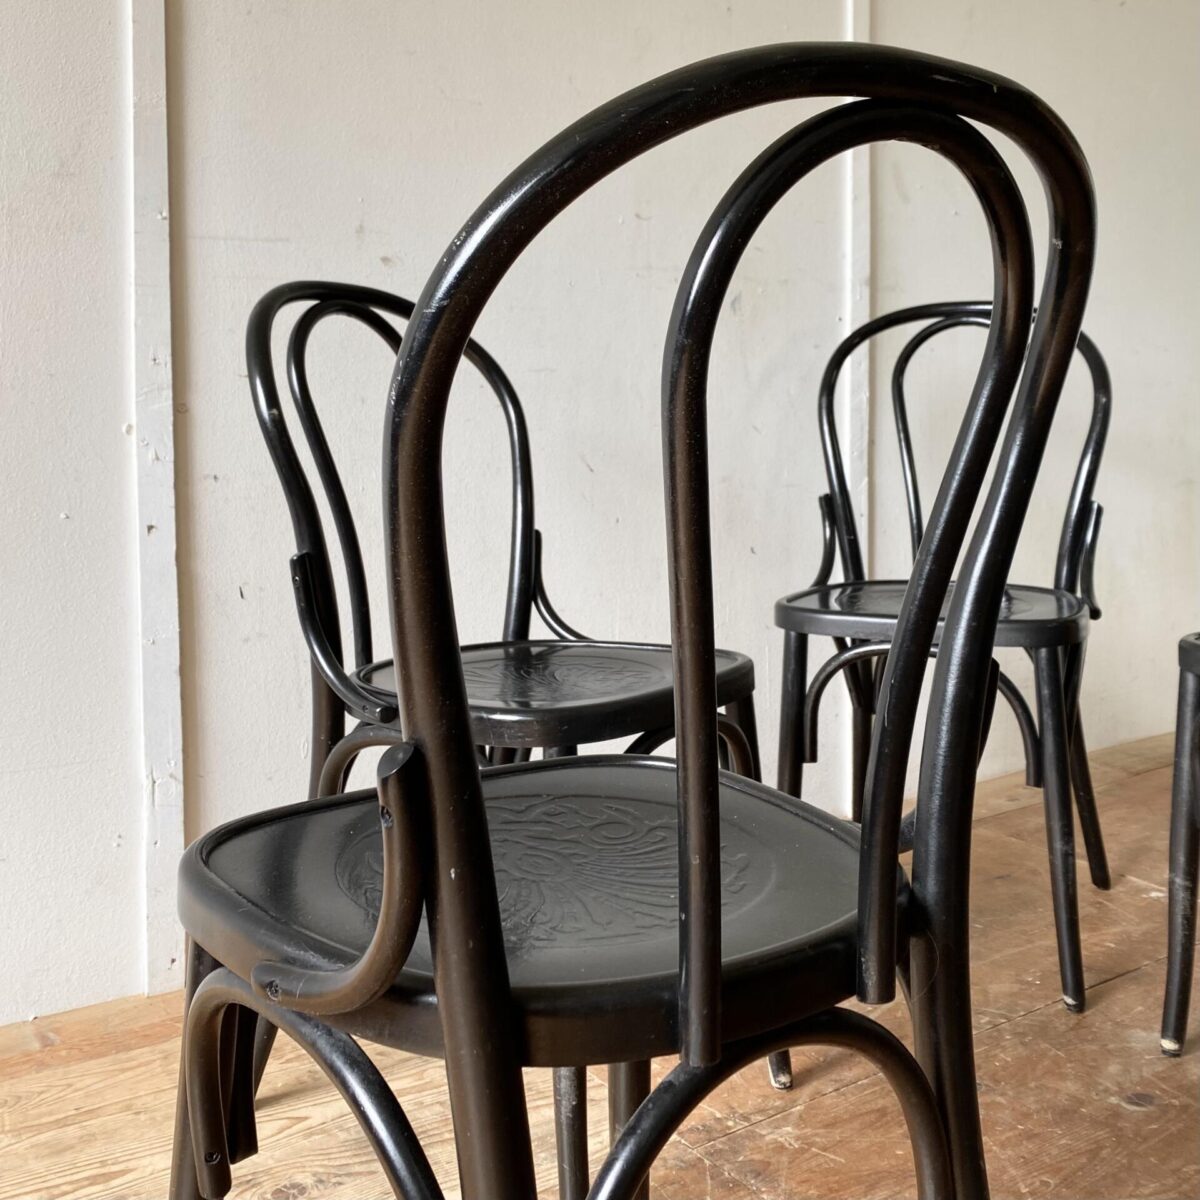 Deuxieme.shop Neuere schwarze Wienerstühle mit geprägten Sitzflächen. Preis pro Stuhl. Die Stühle sind in stabilem Zustand, diverse Farb-Abschürfungen. 